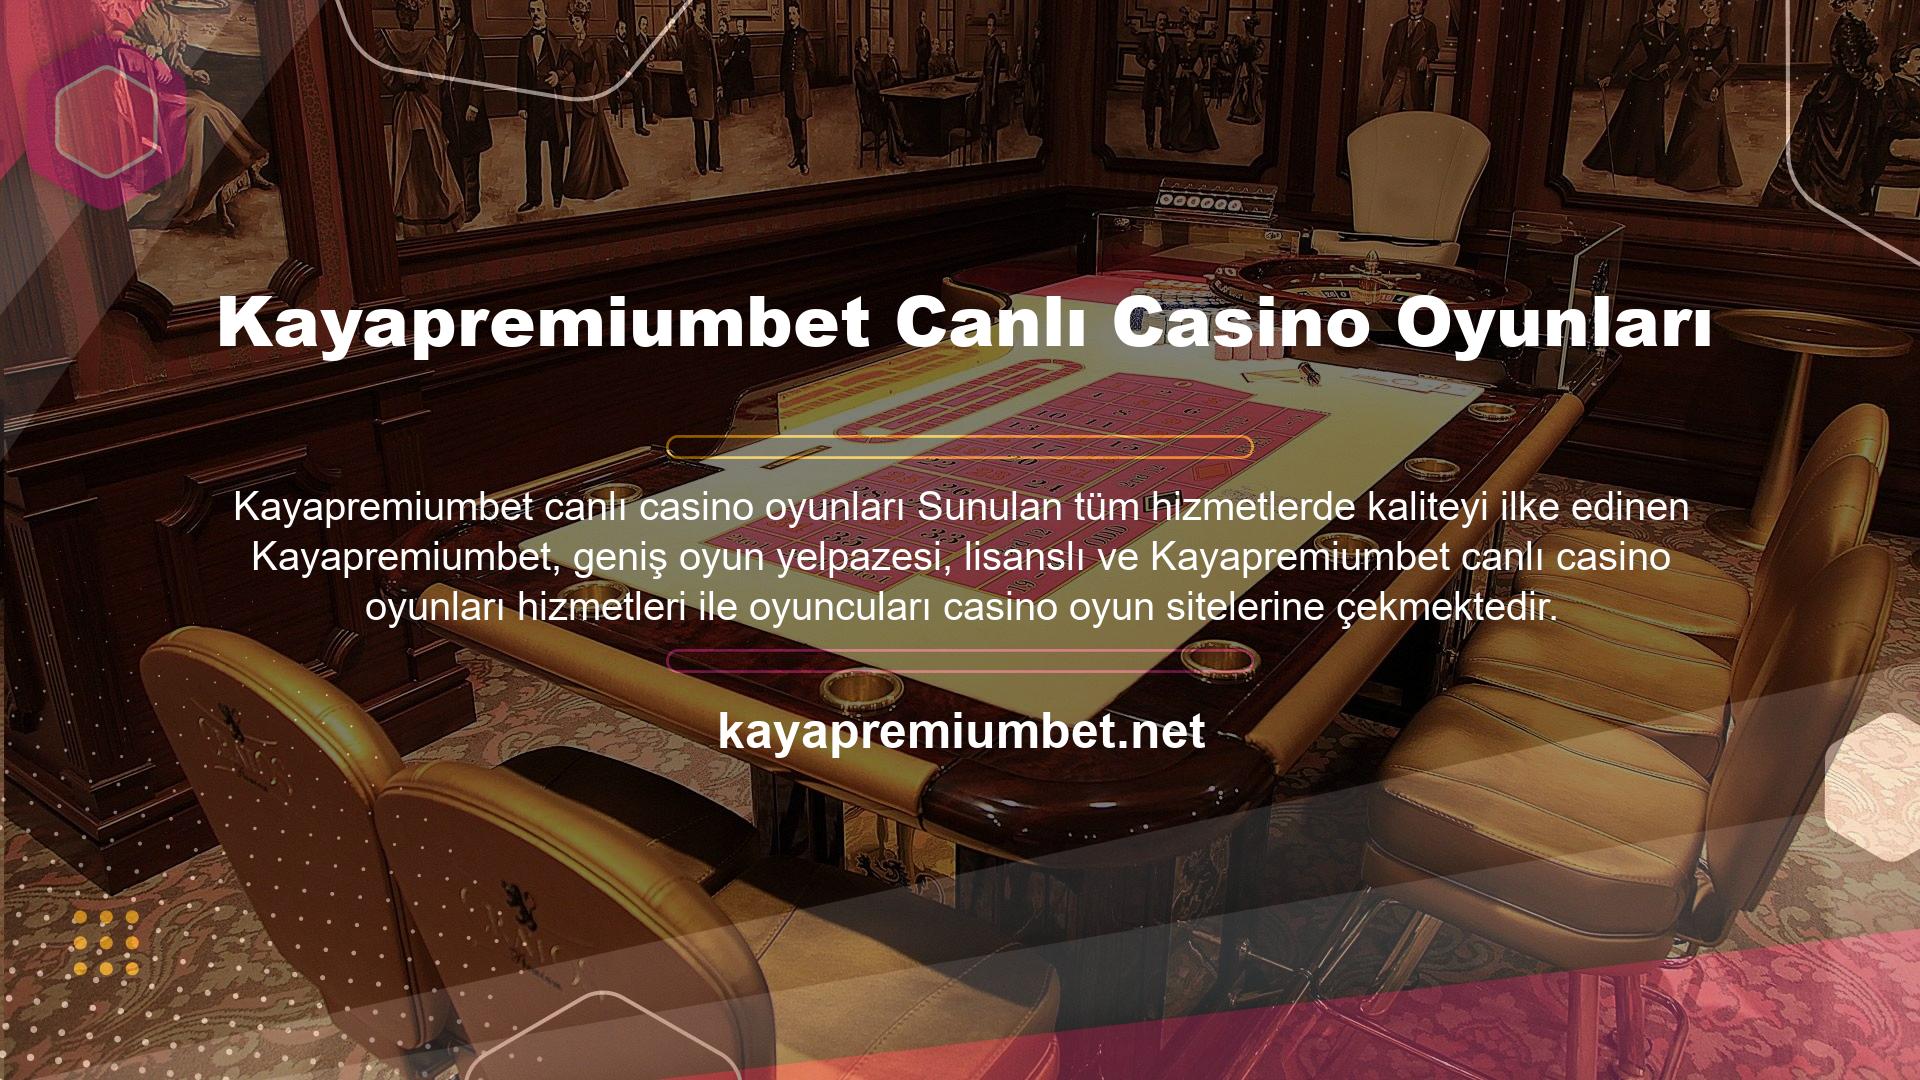 Kayapremiumbet canlı casino oyunlarını araştırırken birçok popüler oyunla karşılaştık